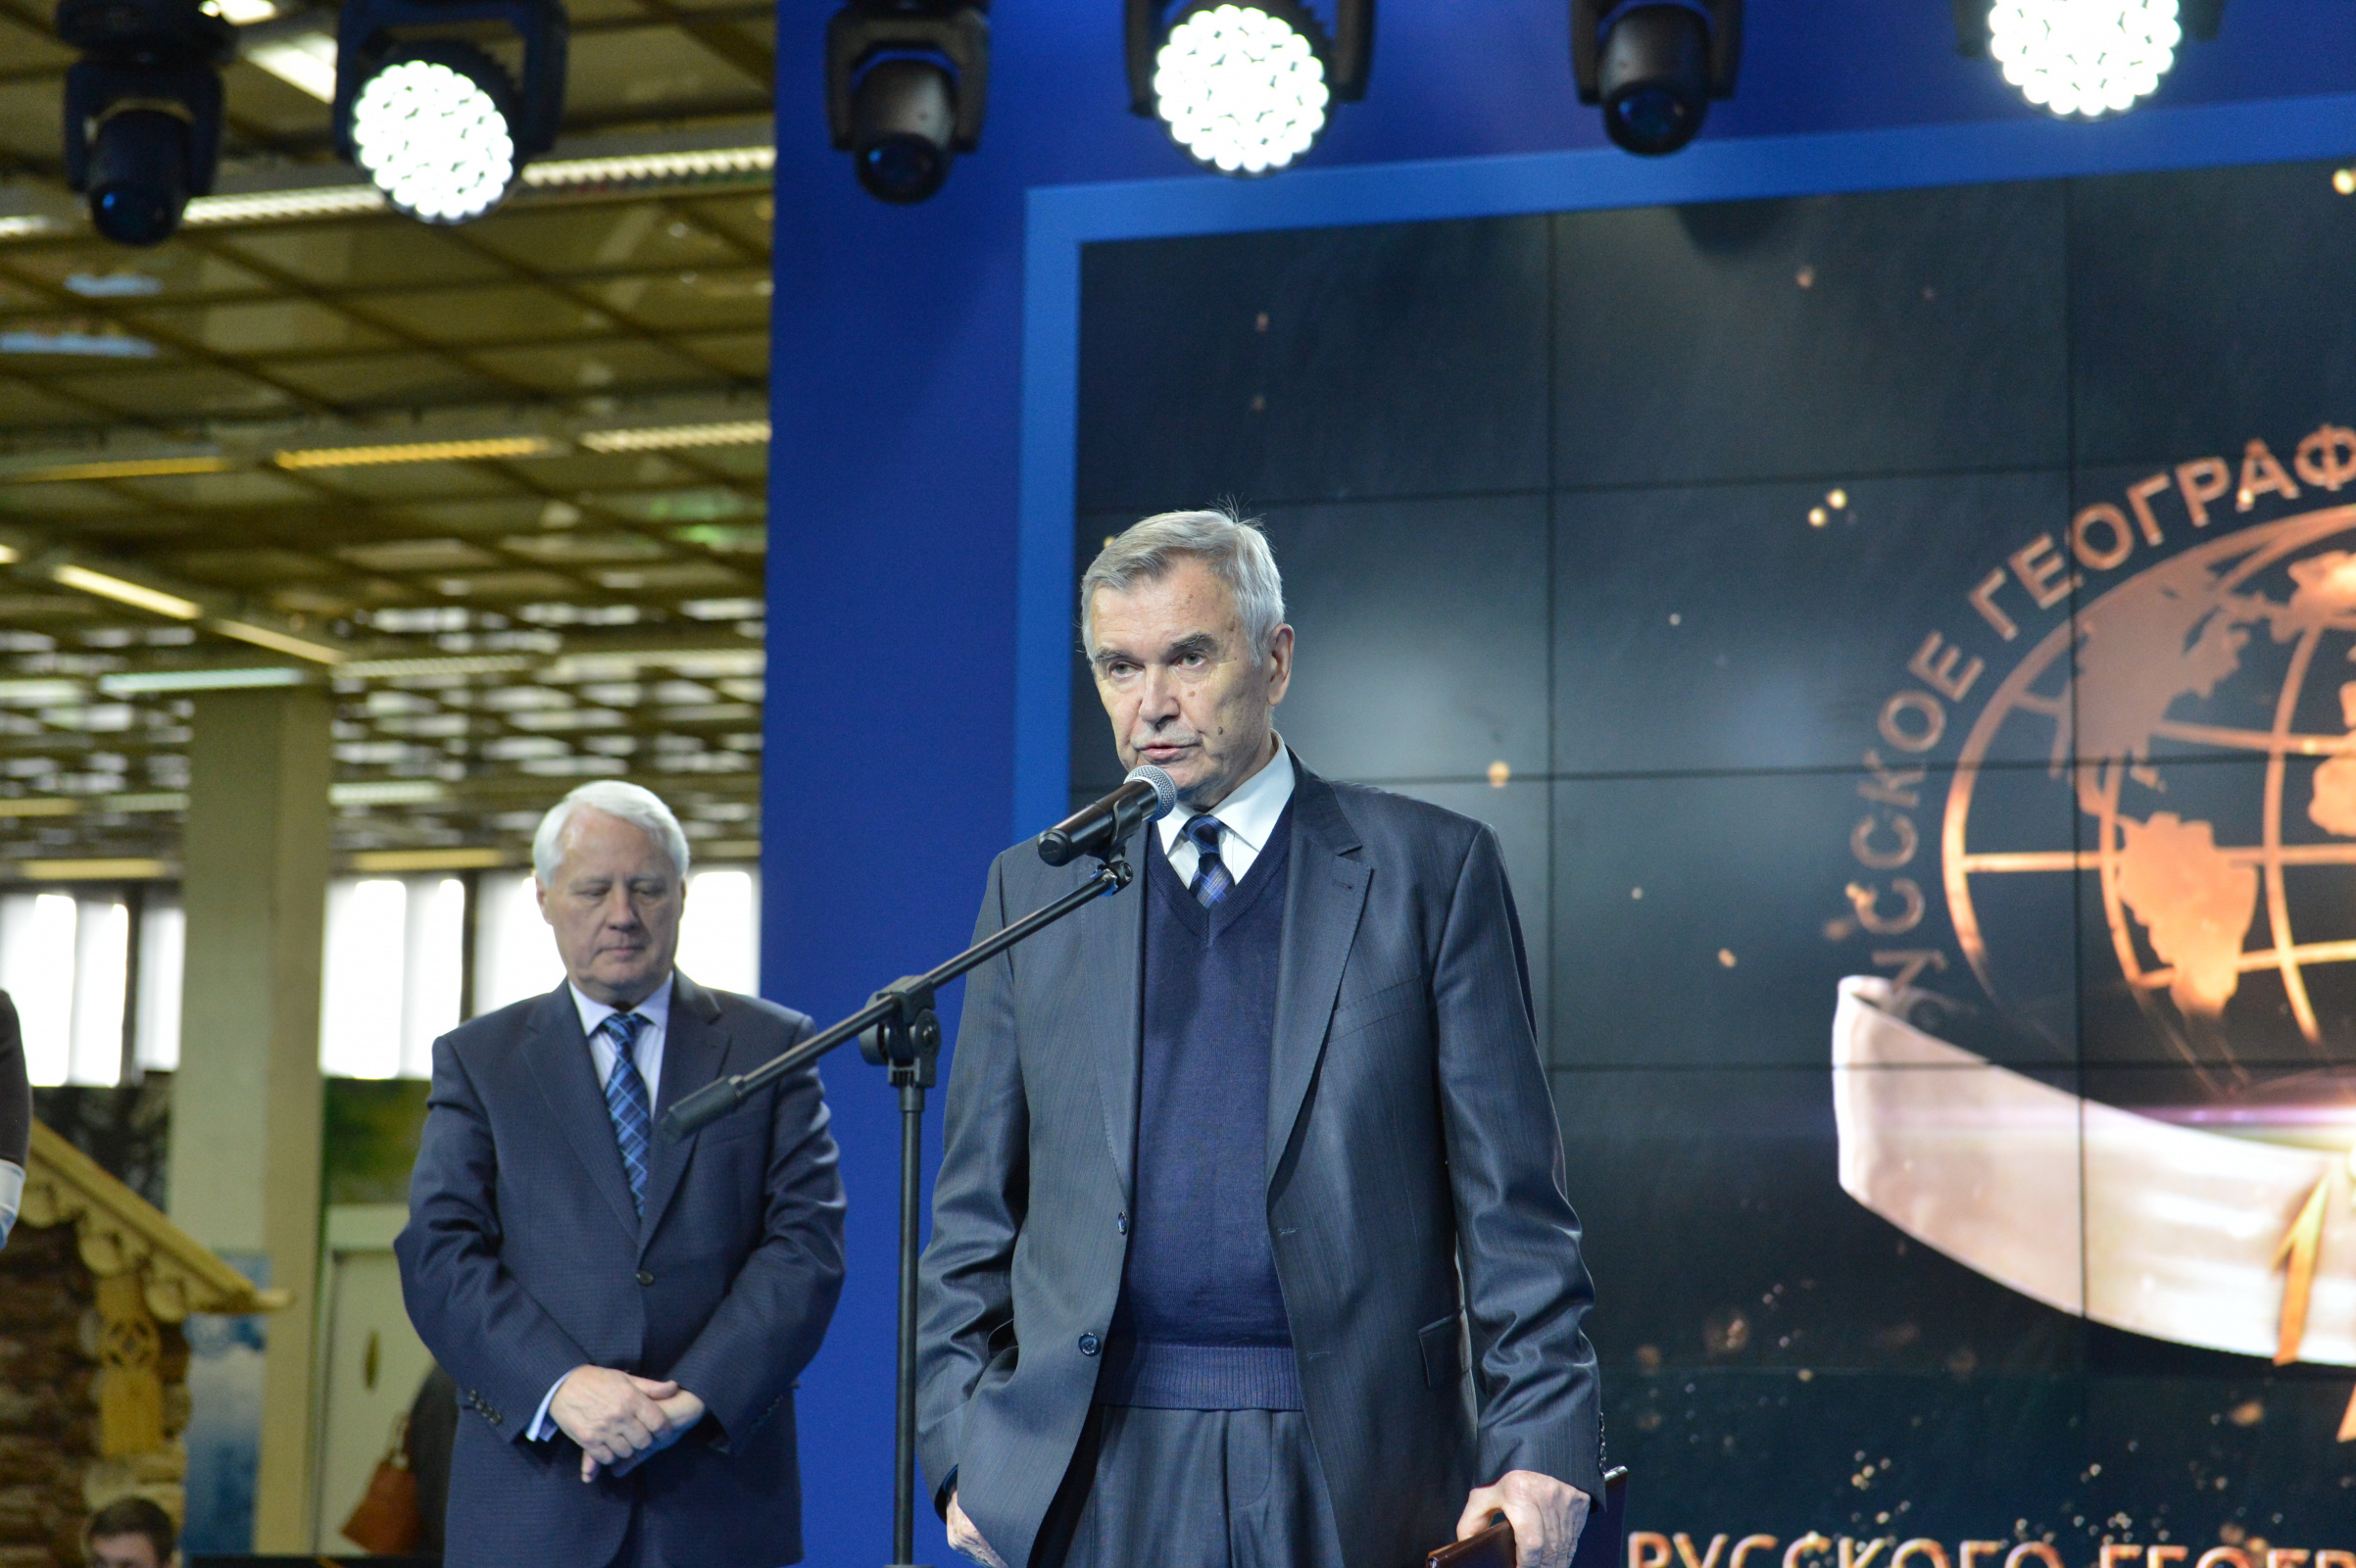 Слева направо: Первый Вице-президент РГО Н.С. Касимов, В.М. Неронов, Почётный Президент РГО В.М. Котляков